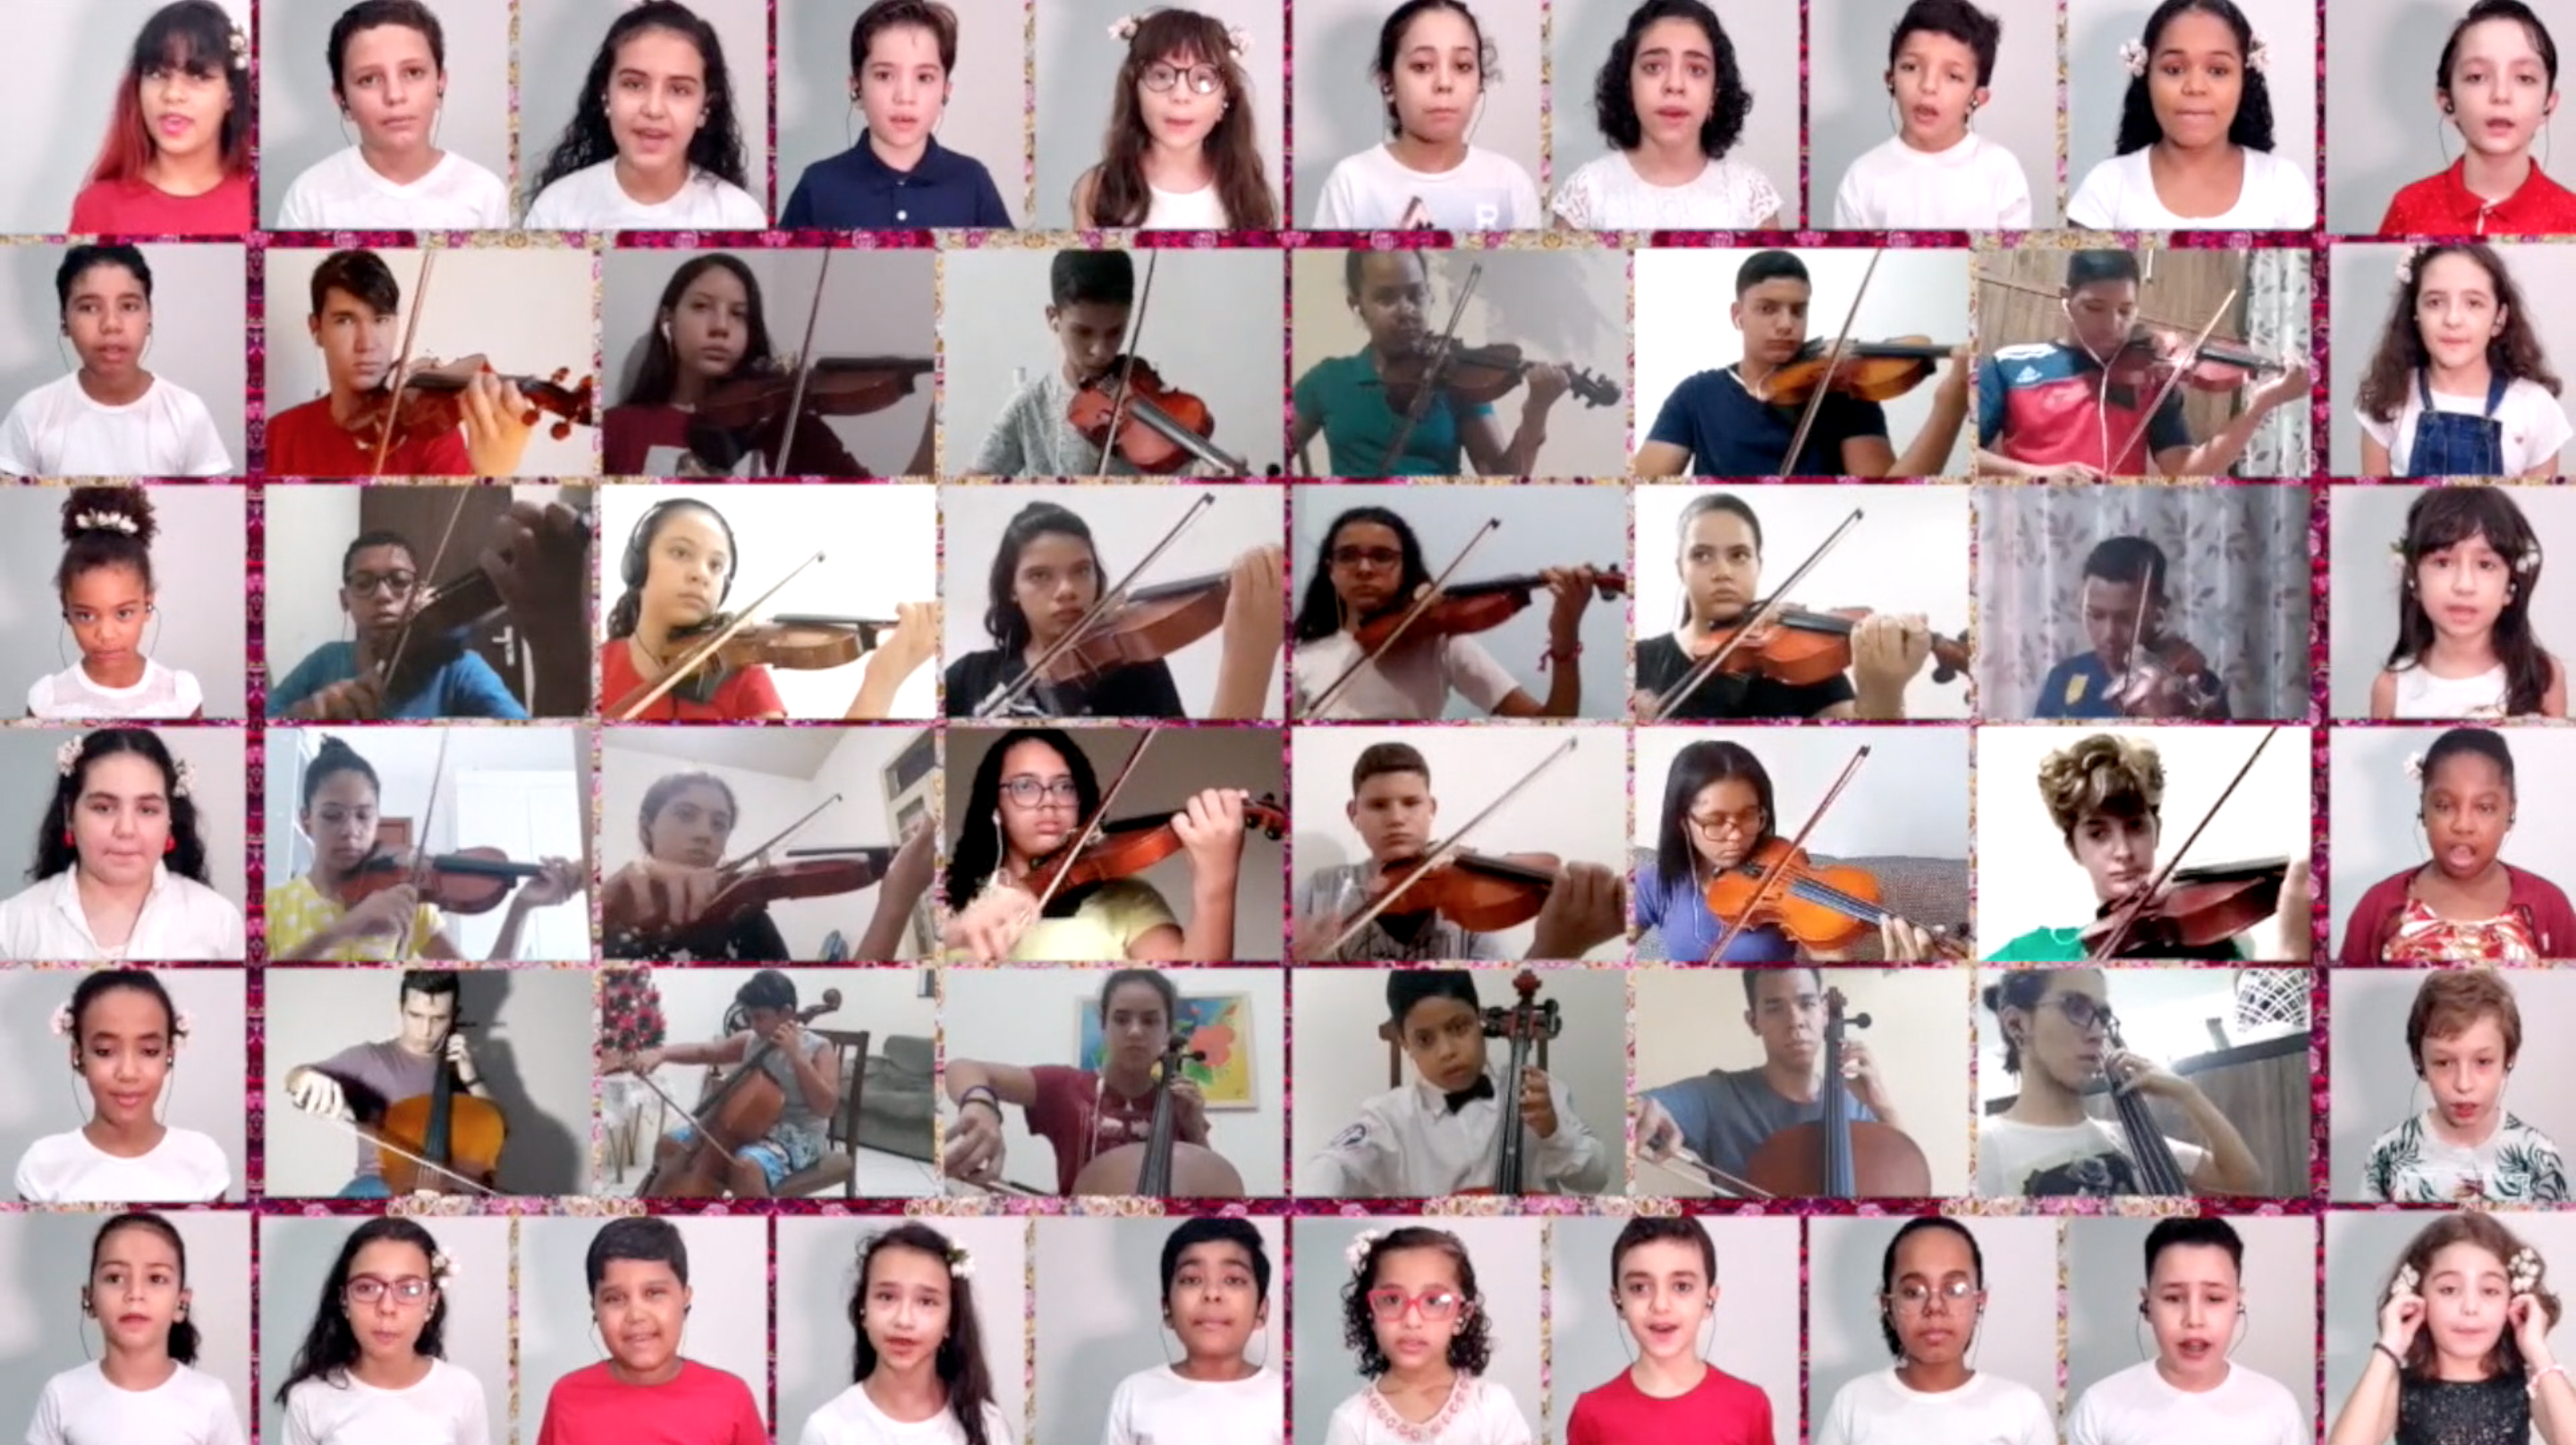 Orquestra e Coral Acadêmicos do projeto Música Criança interpretam as músicas Maria Maria e Gioia nel mondo, nos dias 20 e 22 de dezembro, respectivamente, sempre às 19h